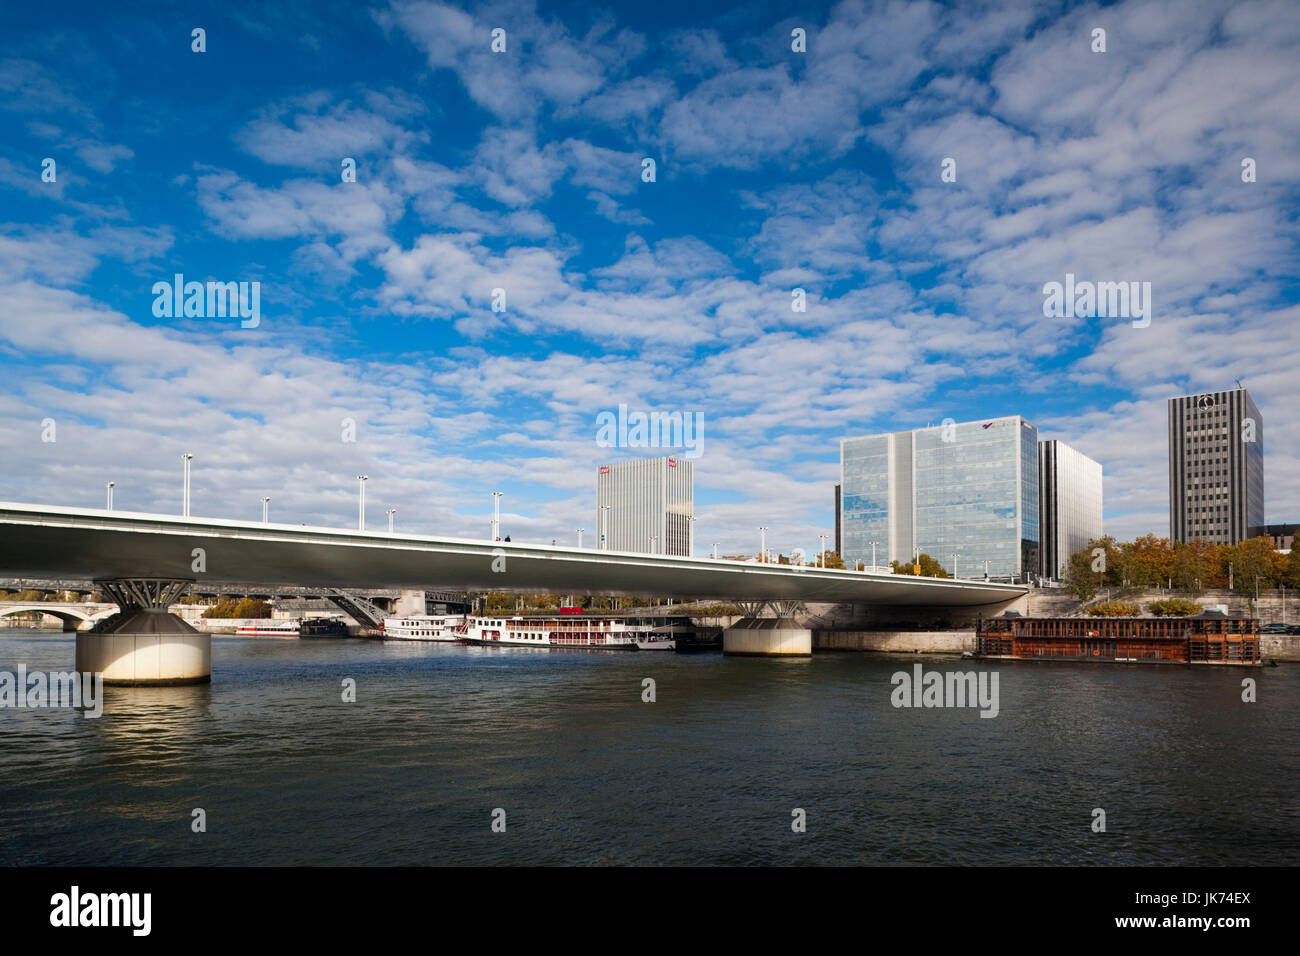 France, Paris, Seine River, buildings on the Quai de la Rapee, and the Pont Charles De Gaulle bridge Stock Photo